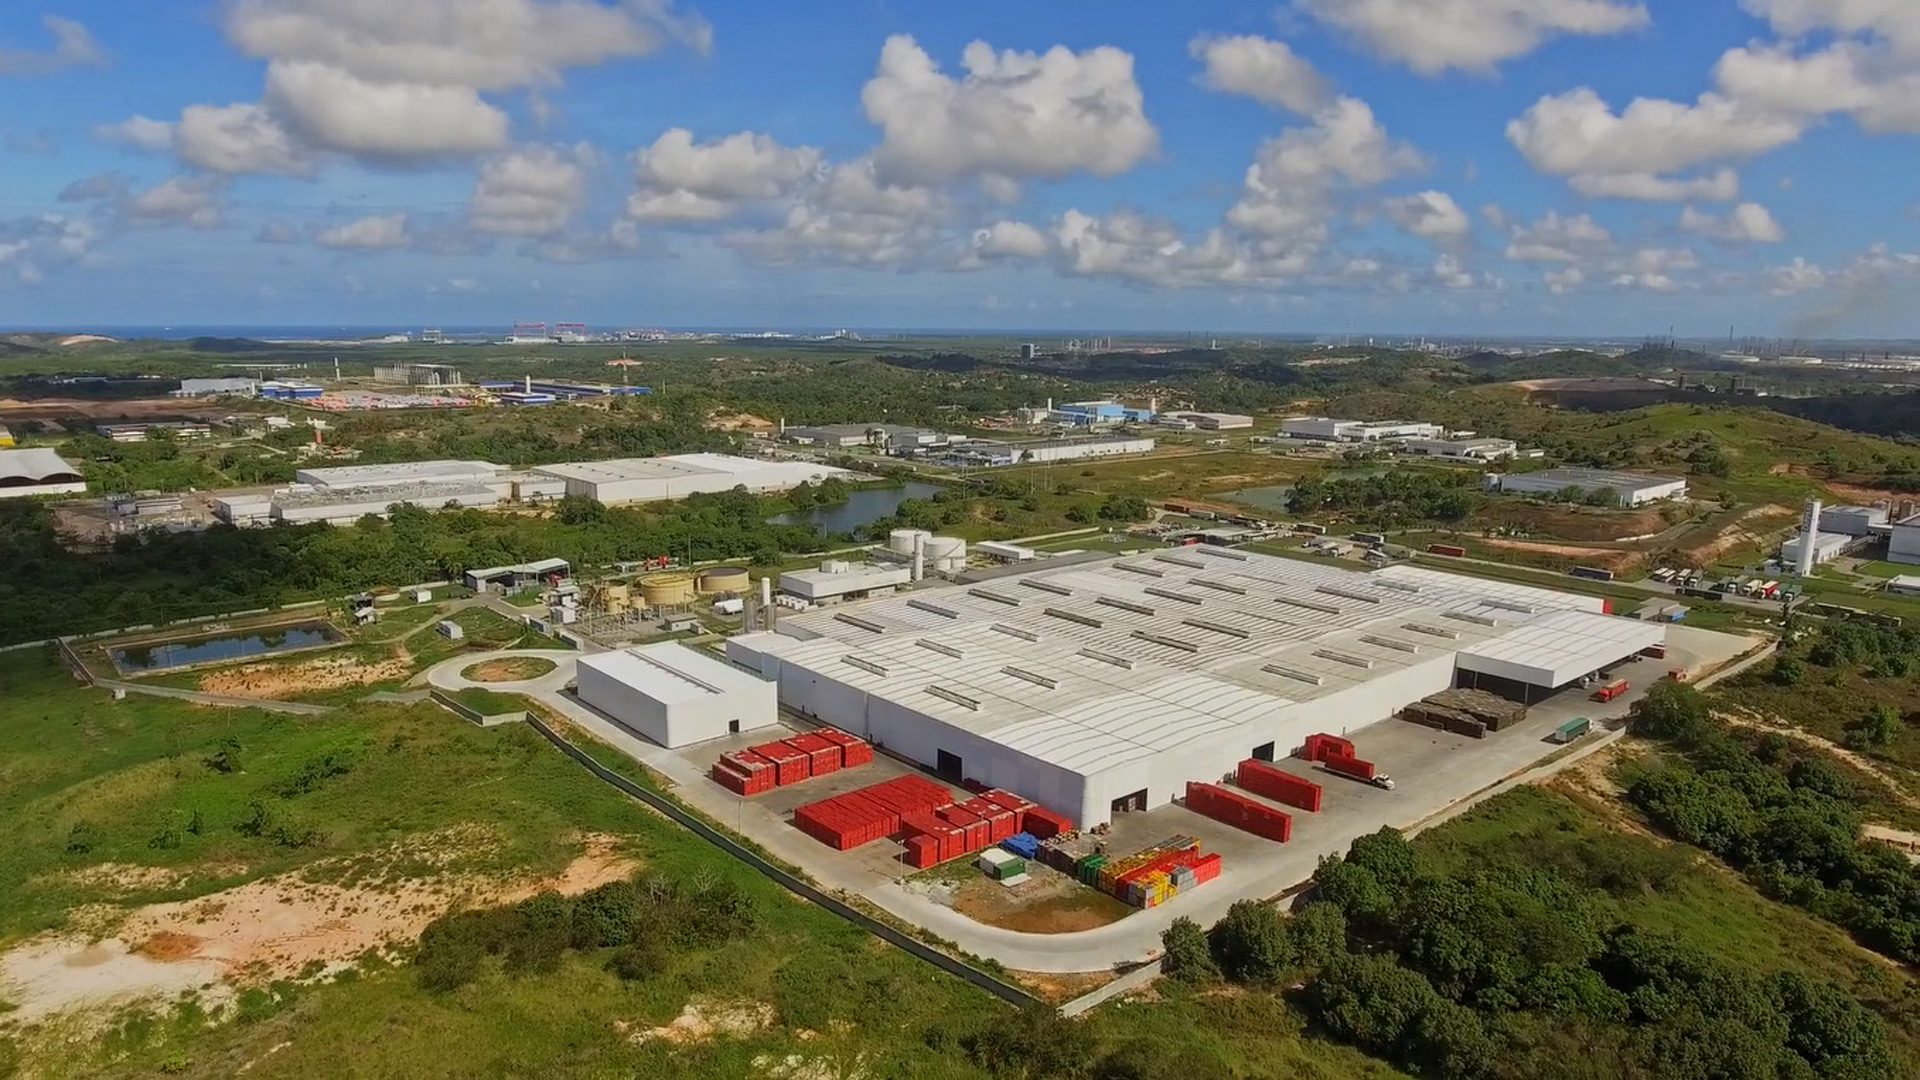 O Complexo Industrial Portuário de Suape (CIPS) conta com mais de 70 empresas. Foto: Ventana / ActionAid